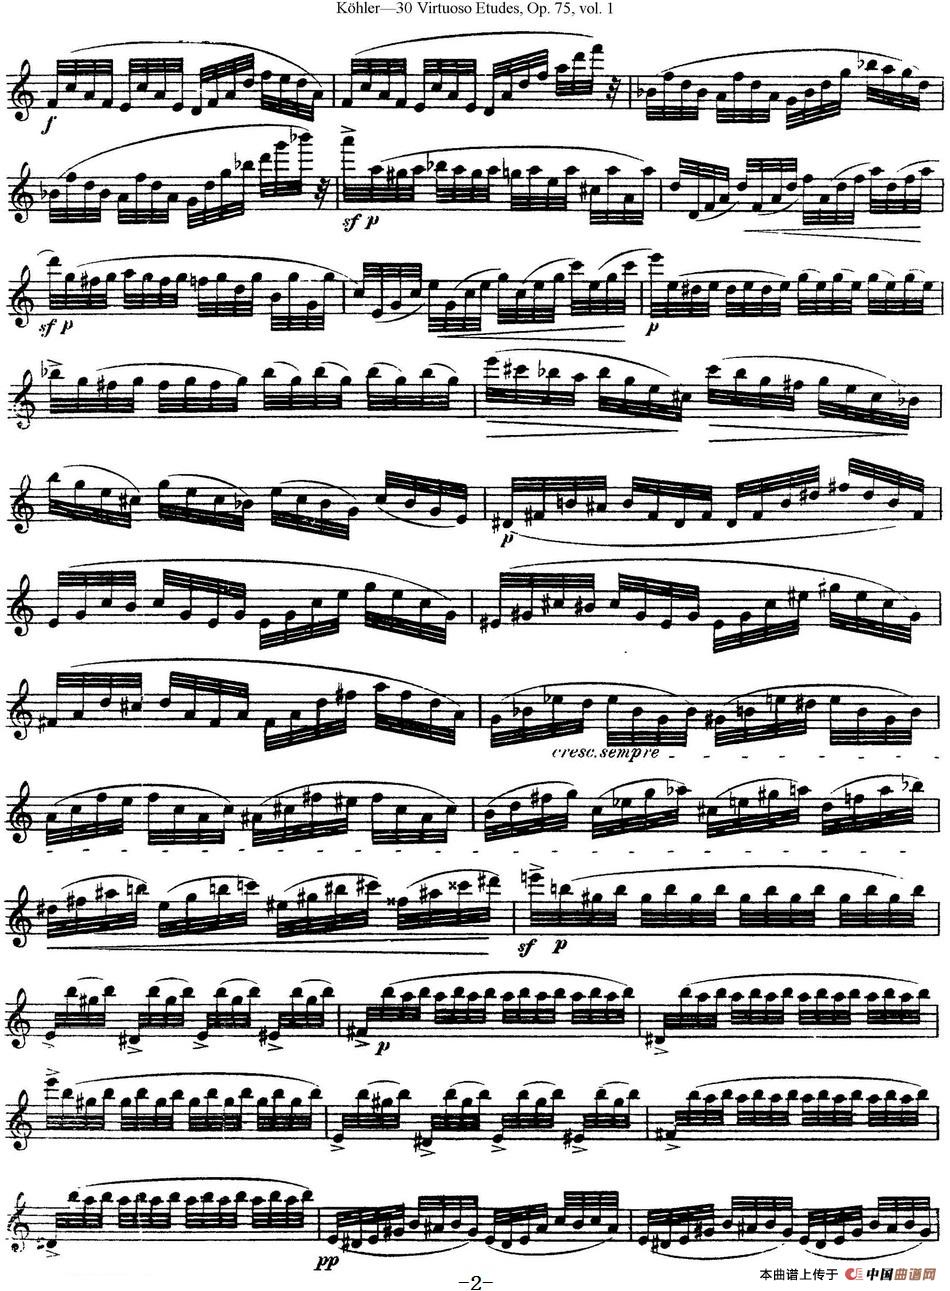 柯勒30首高级长笛练习曲作品75号（NO.6）长笛谱